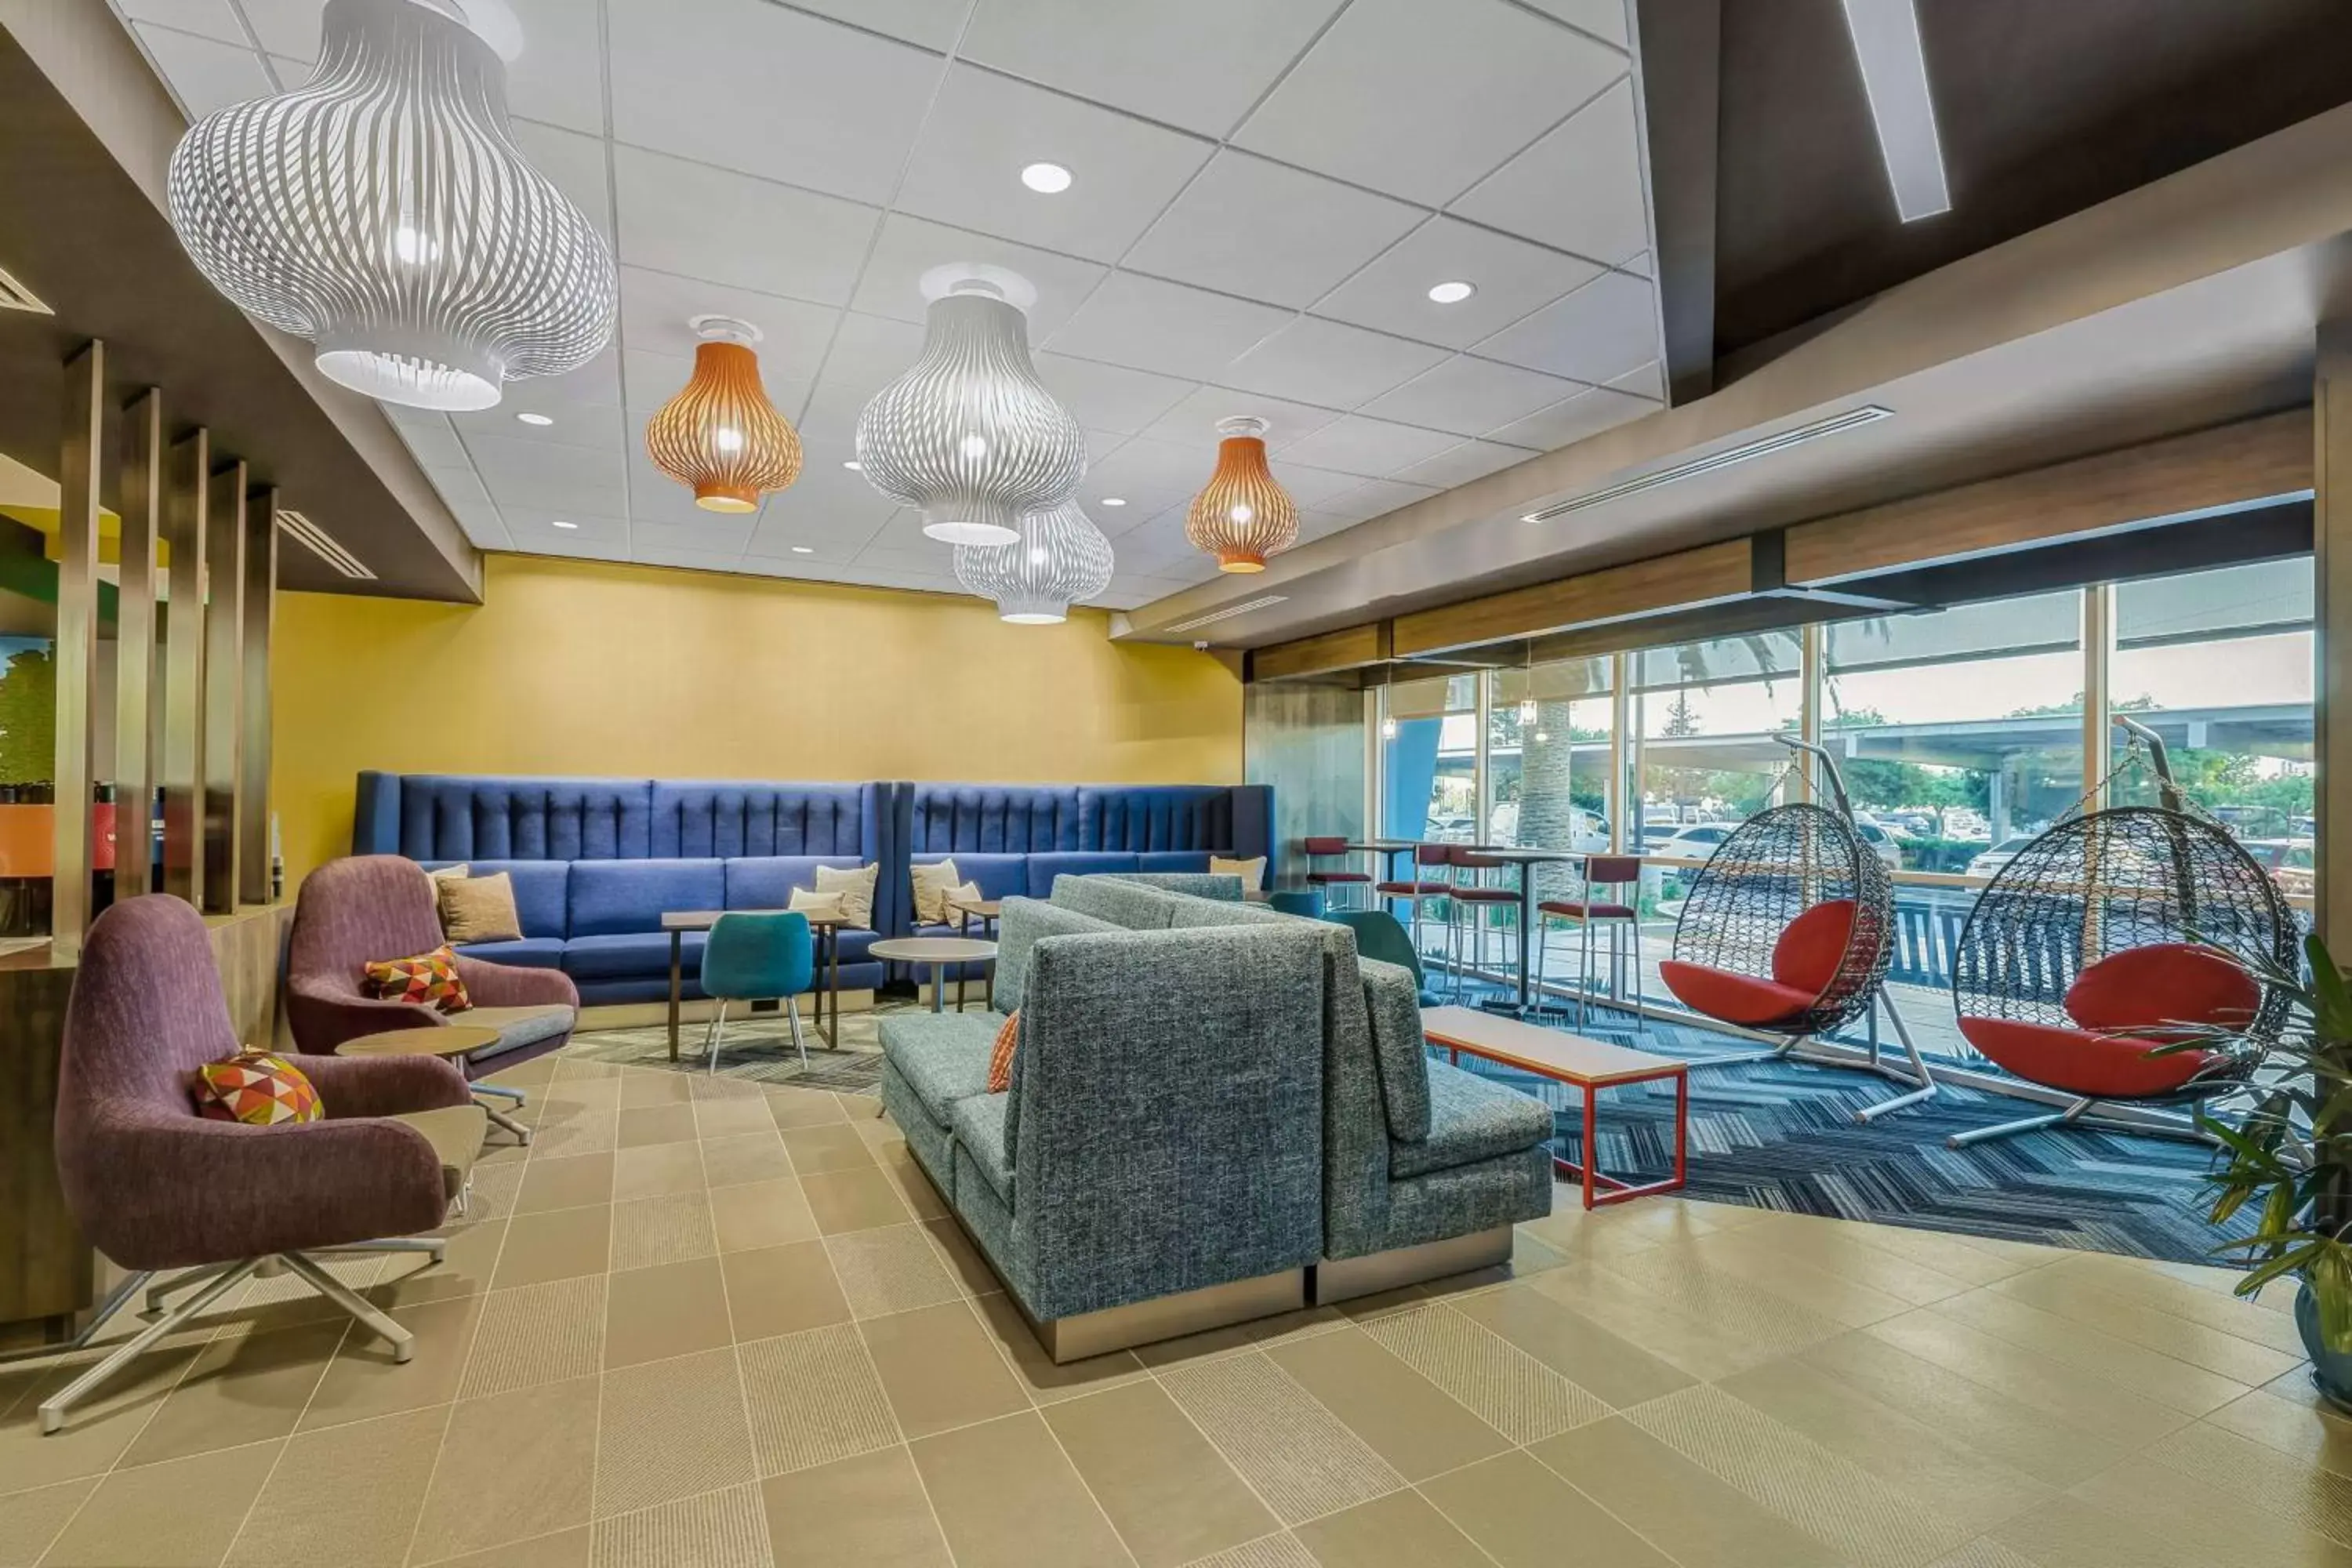 Lobby or reception in Tru By Hilton Lathrop